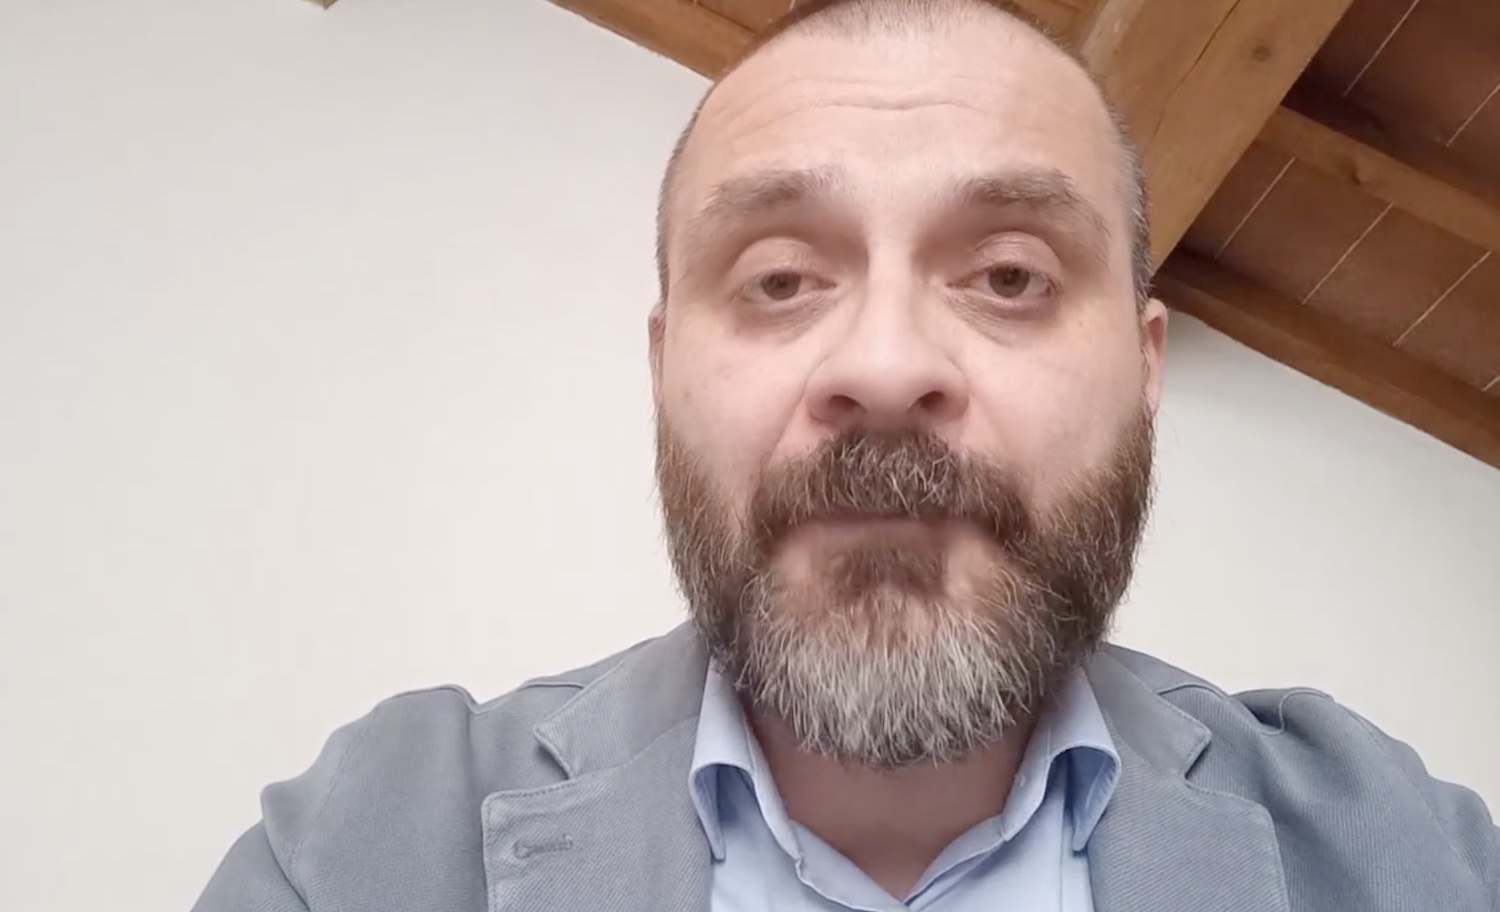 Il consigliere comunale M5s contro la bandiera ucraina vince la sua battaglia: «Via dal Comune» – Il video